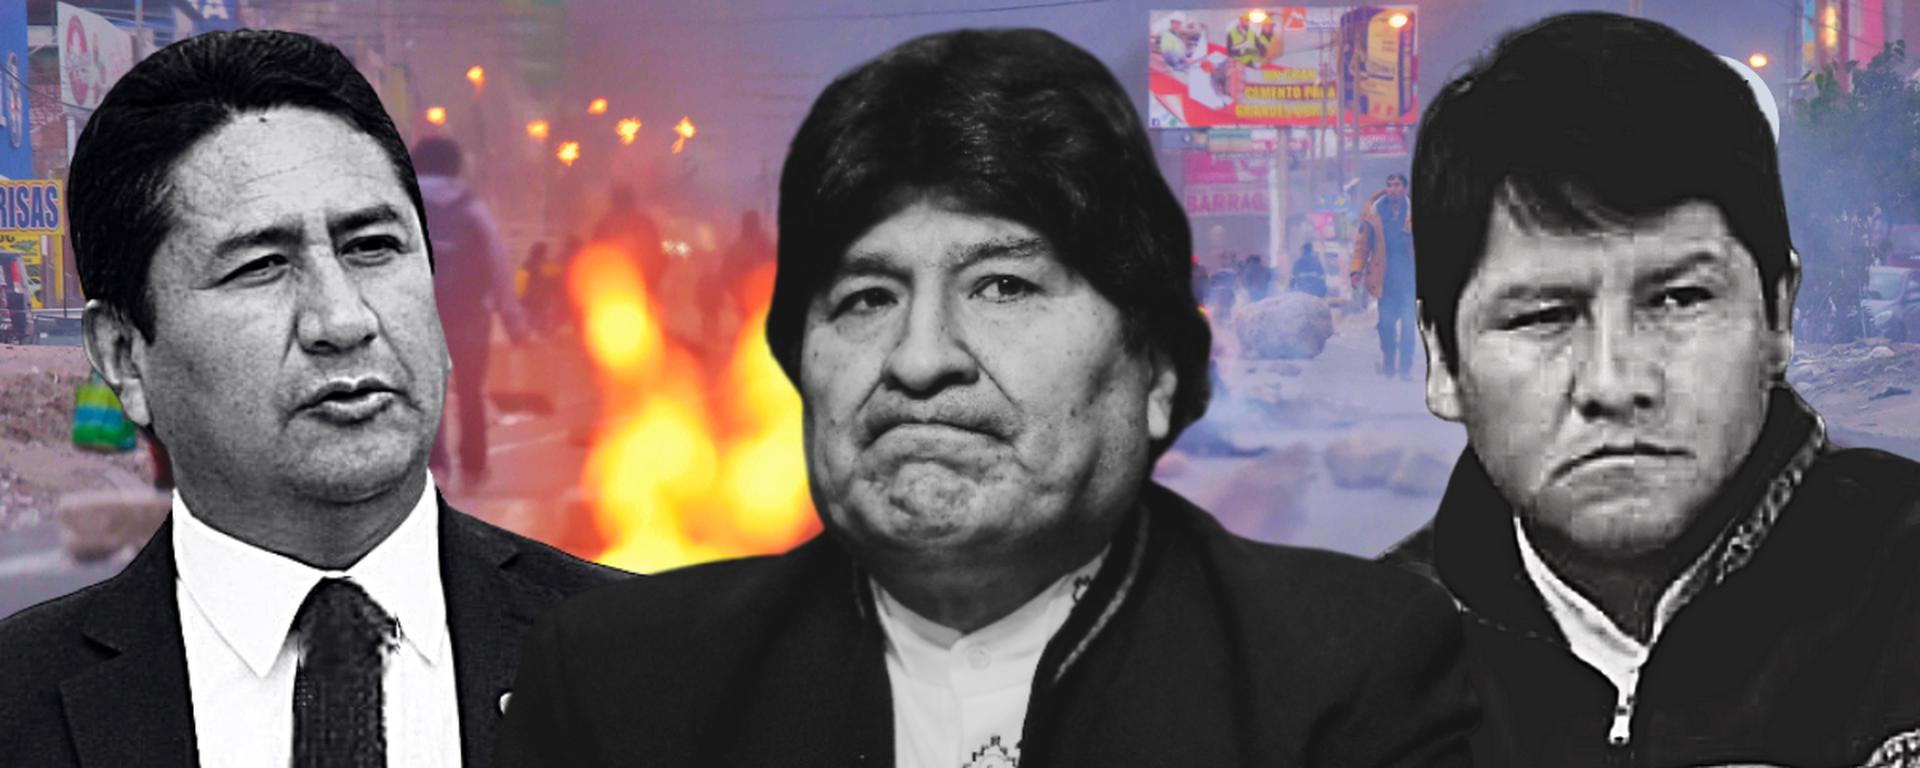 Evo Morales no se presenta a citación fiscal: ¿Cuál es la situación de la investigación en su contra?